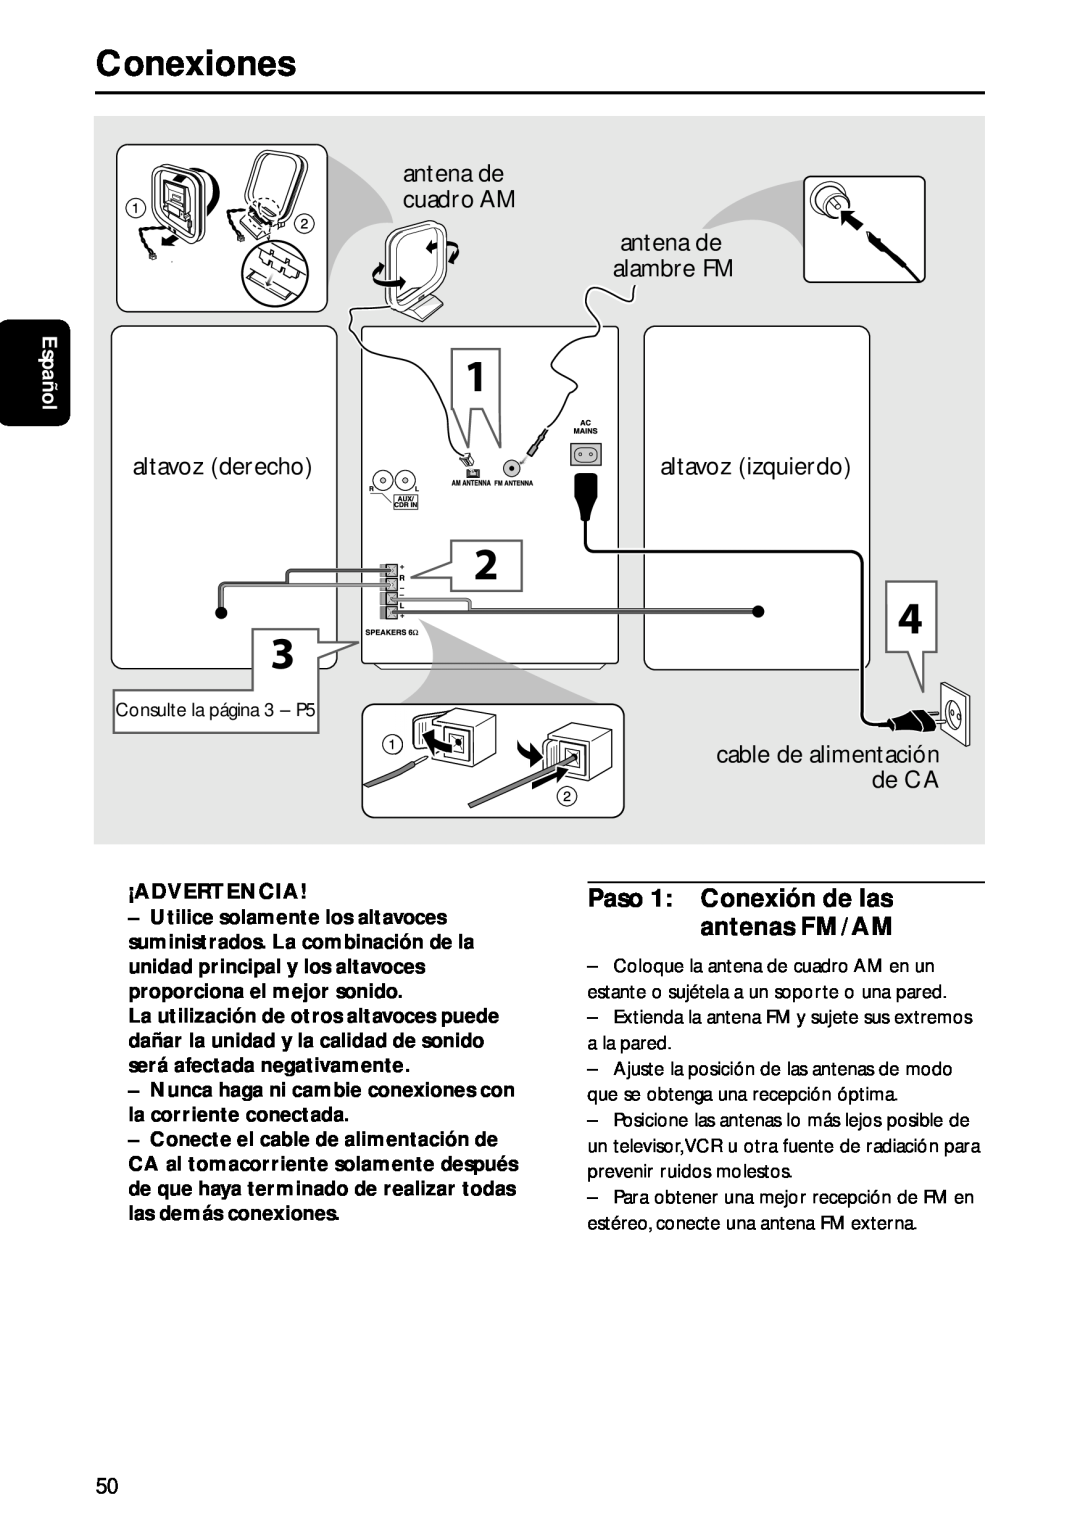 Philips MC-M570 manual Conexiones, antena de cuadro AM, altavoz derecho, altavoz izquierdo, antena de alambre FM, Español 